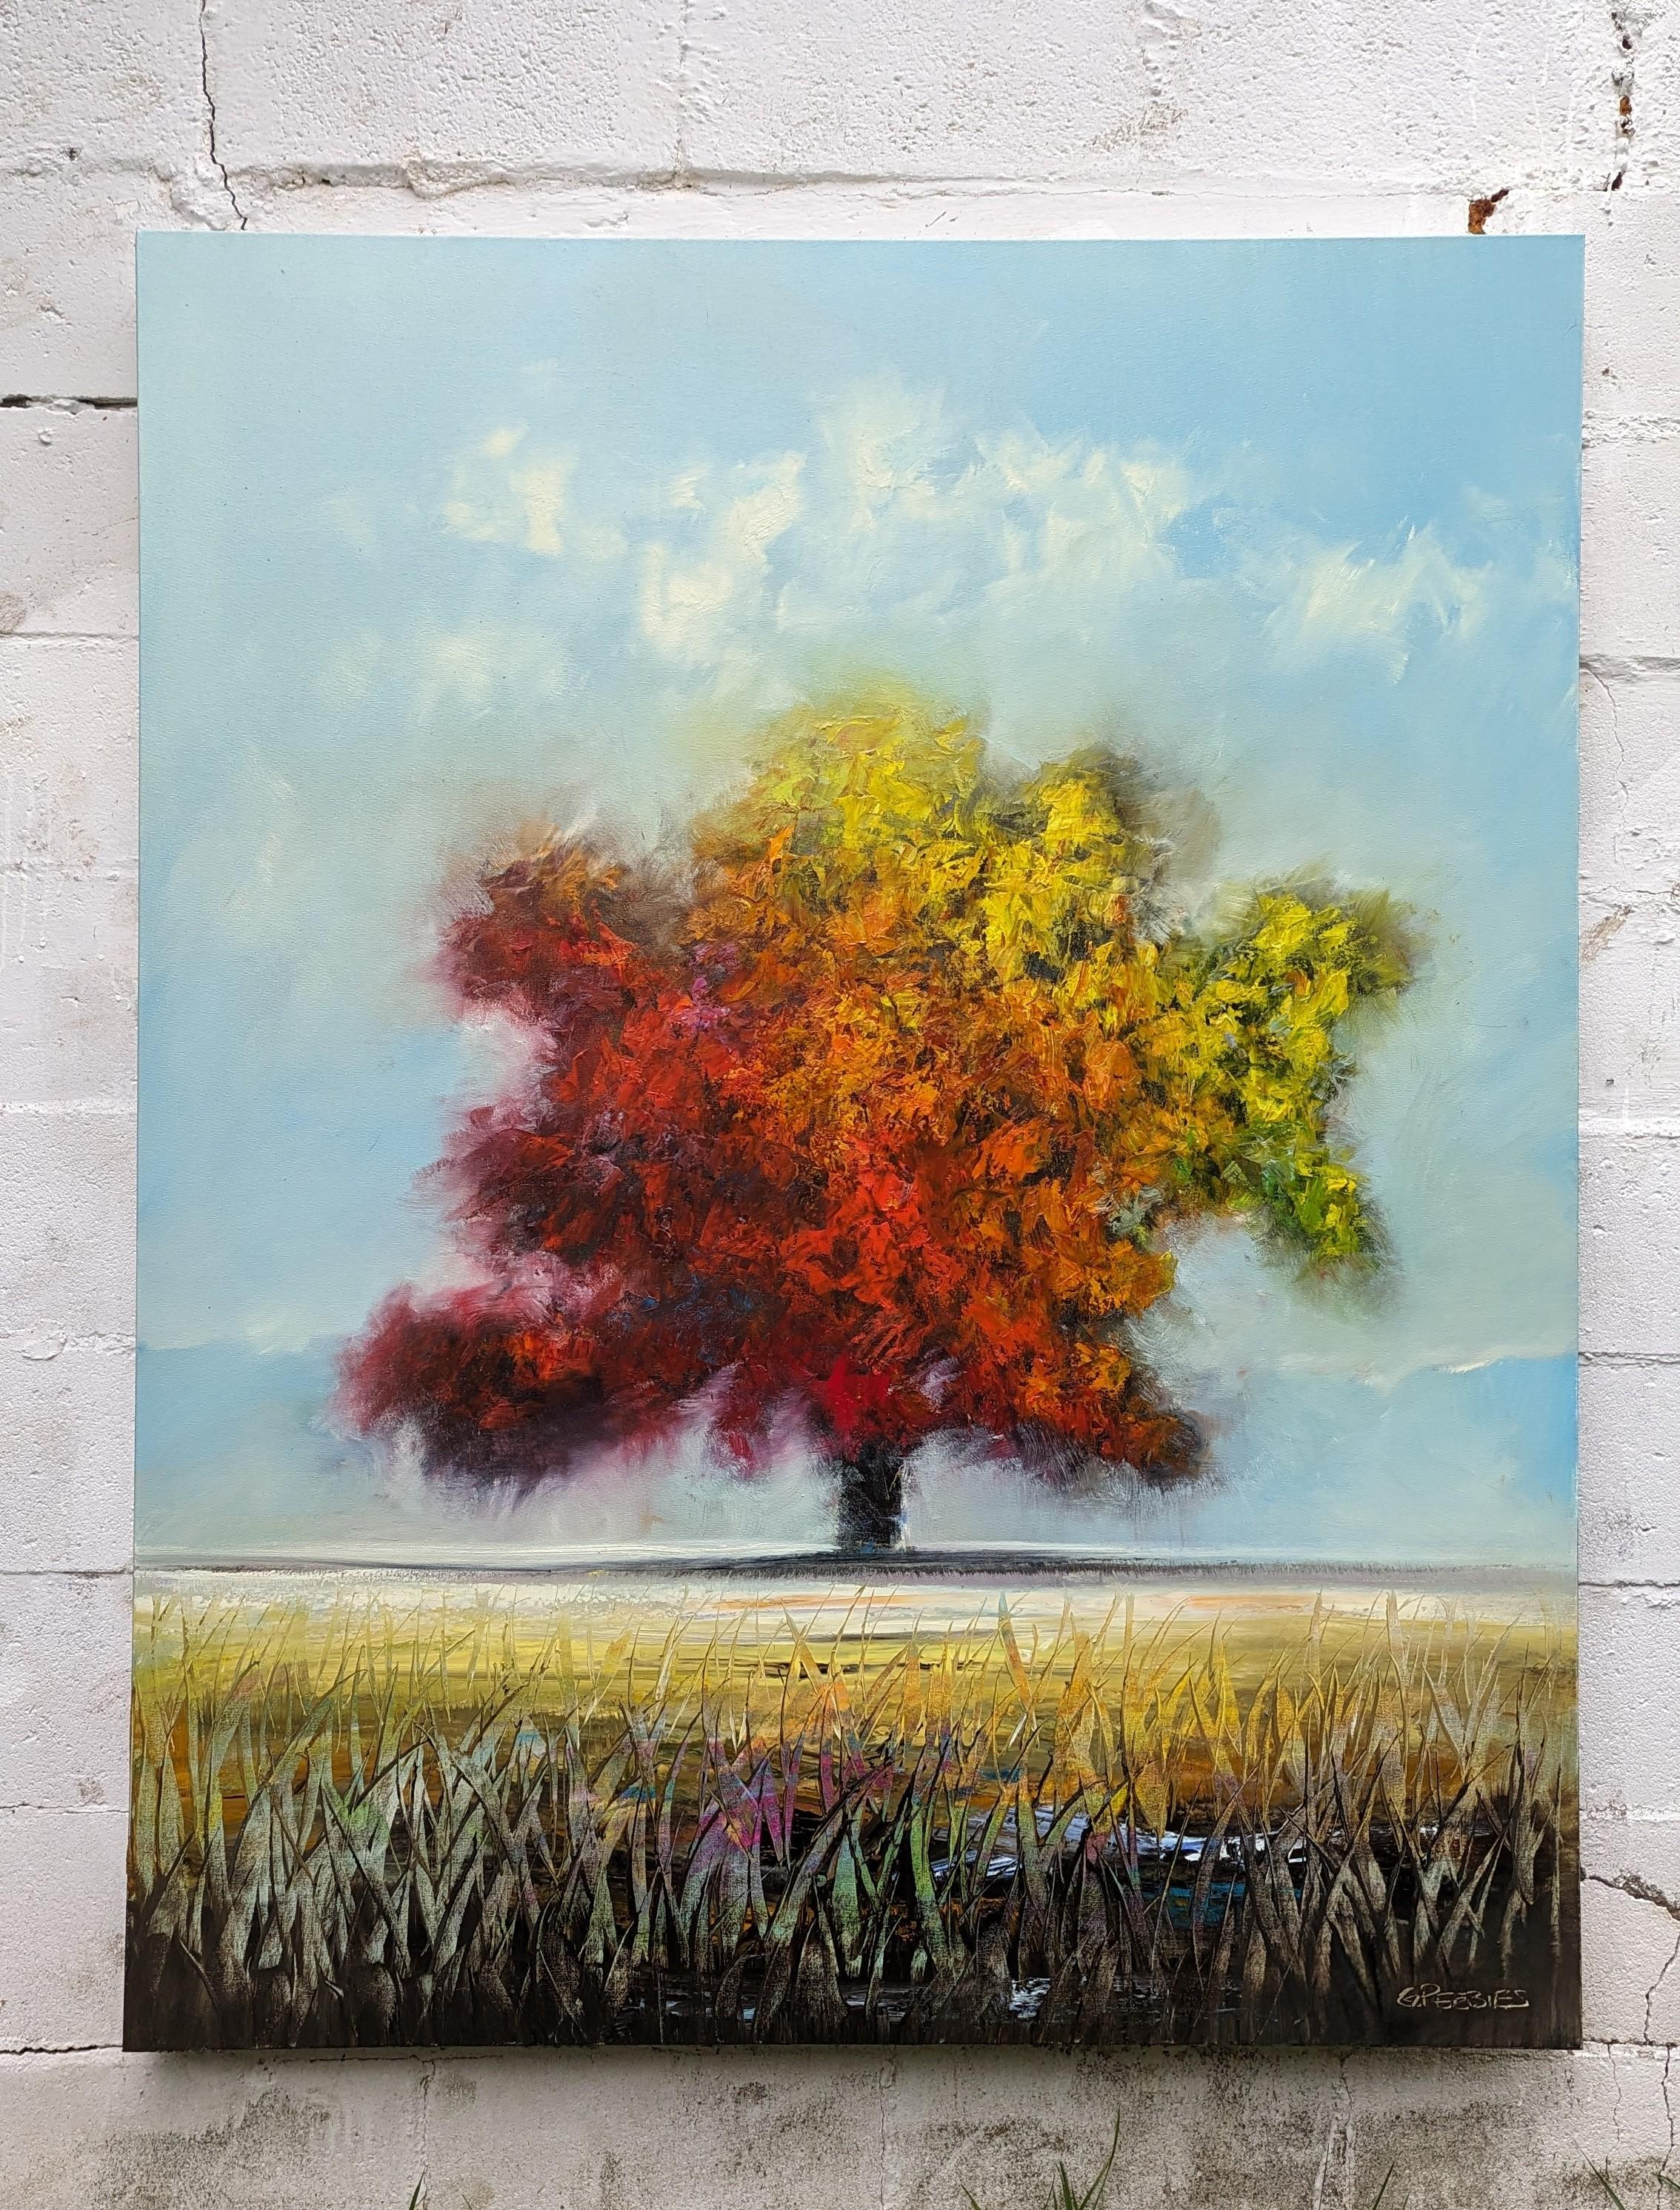 <p>Kommentare des Künstlers<br>Der Künstler George Peebles präsentiert seine Interpretation des Herbstes von seiner schönsten Seite. Der mit roten, orangefarbenen und gelben Blättern geschmückte Baum erhebt sich inmitten eines weitläufigen Feldes.